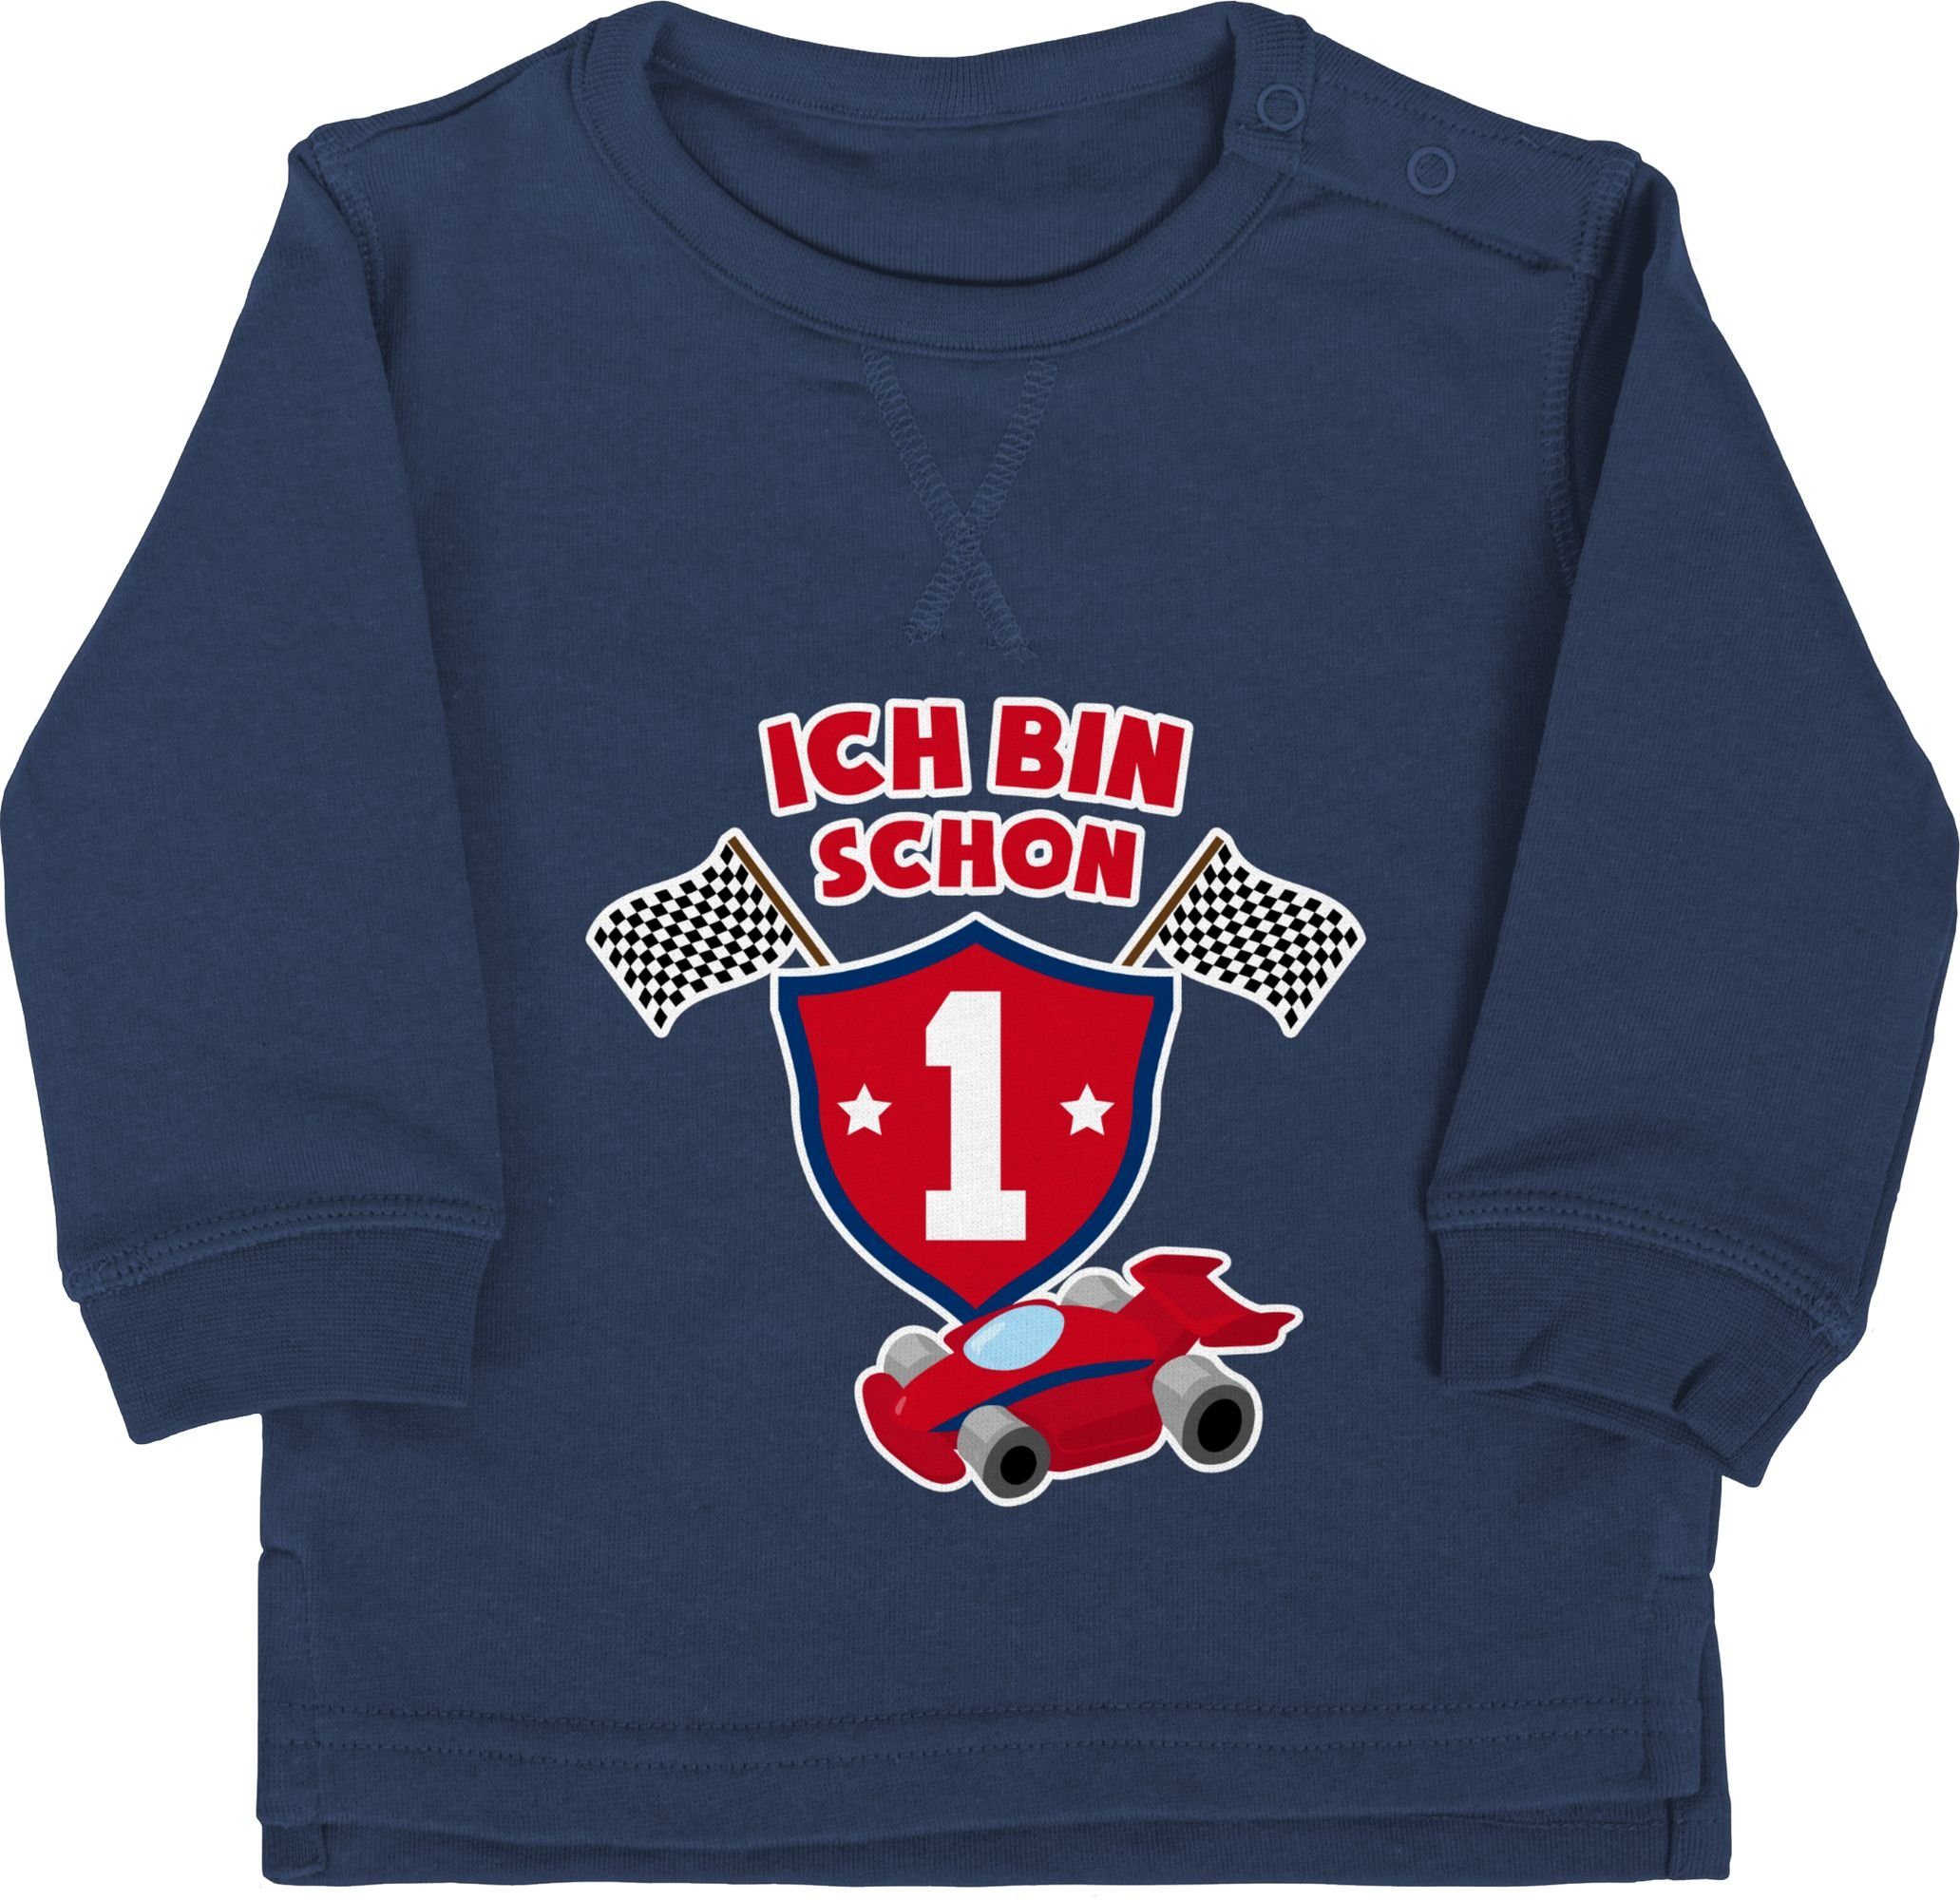 Shirtracer Sweatshirt »Ich bin schon eins Rennauto - 1. Geburtstag - Baby  Pullover« pullover ich bin schon 1 - babypullover erster geburtstag - pulis  one online kaufen | OTTO